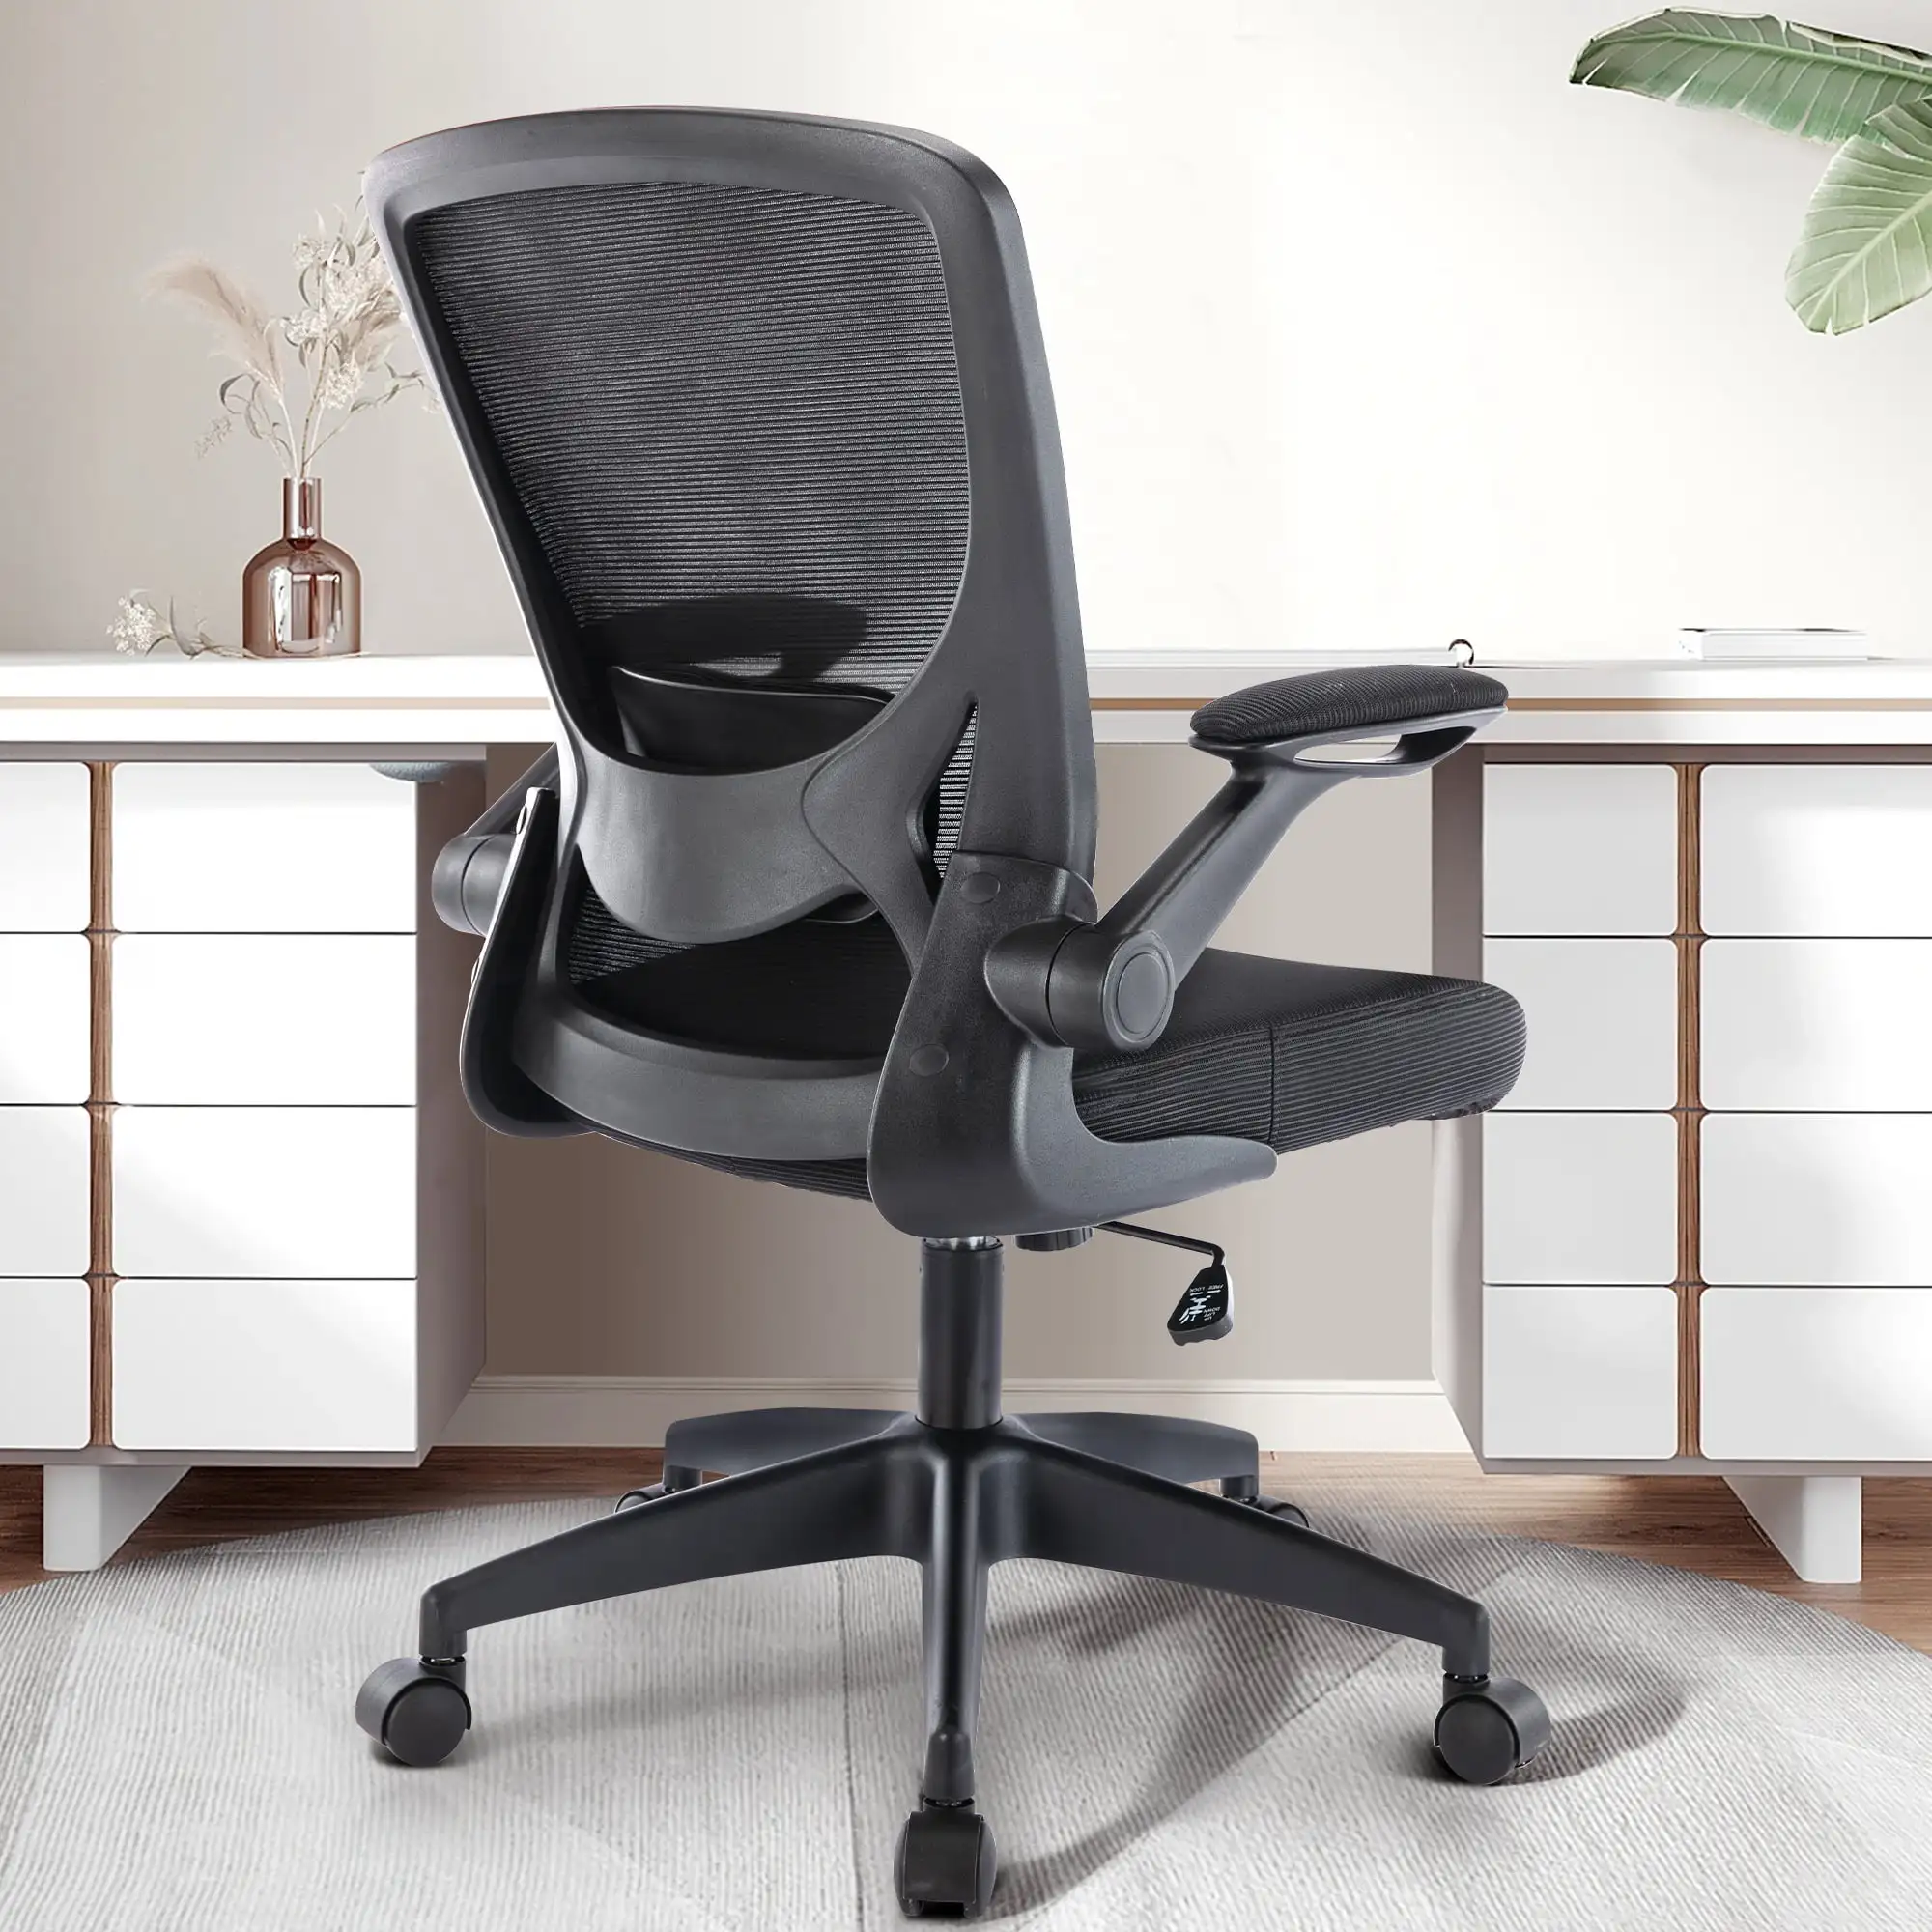 Эргономичное офисное кресло Coolhut, поясничная поддержка Эргономичное сетчатое рабочее кресло с откидывающимися подлокотниками (черное)